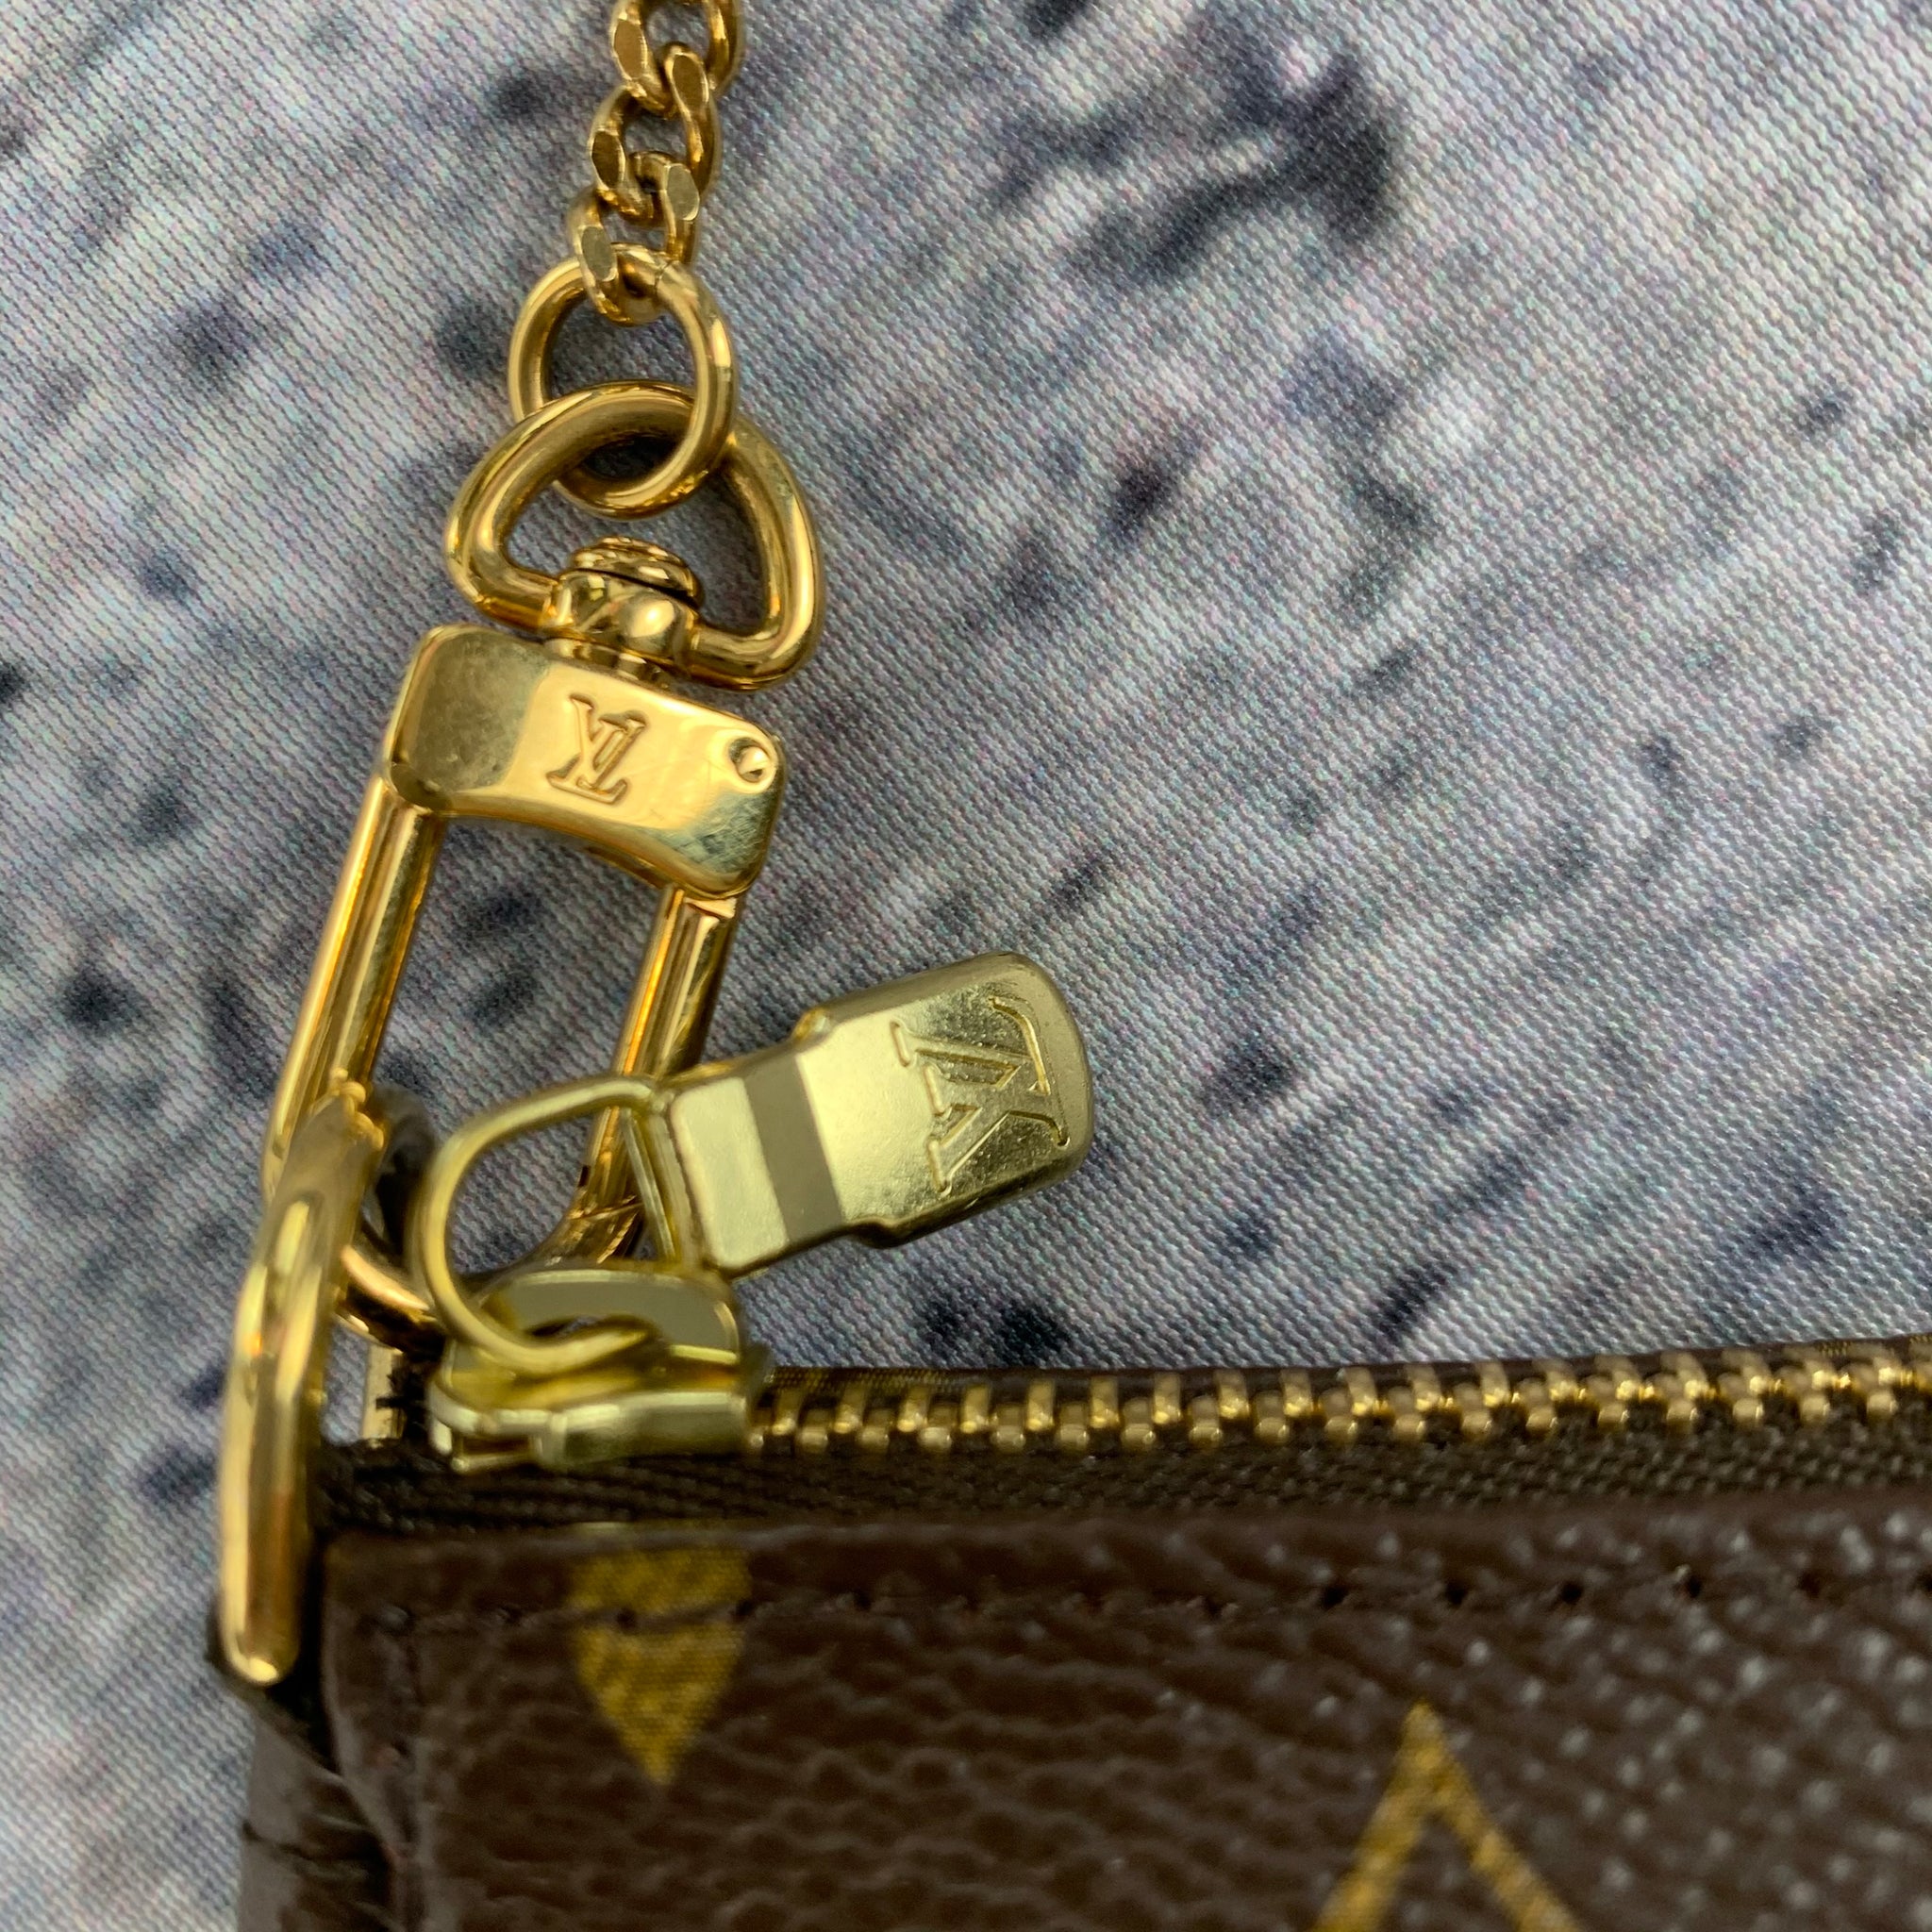 Louis Vuitton Mini Pochette Accessories On Chain Monogram